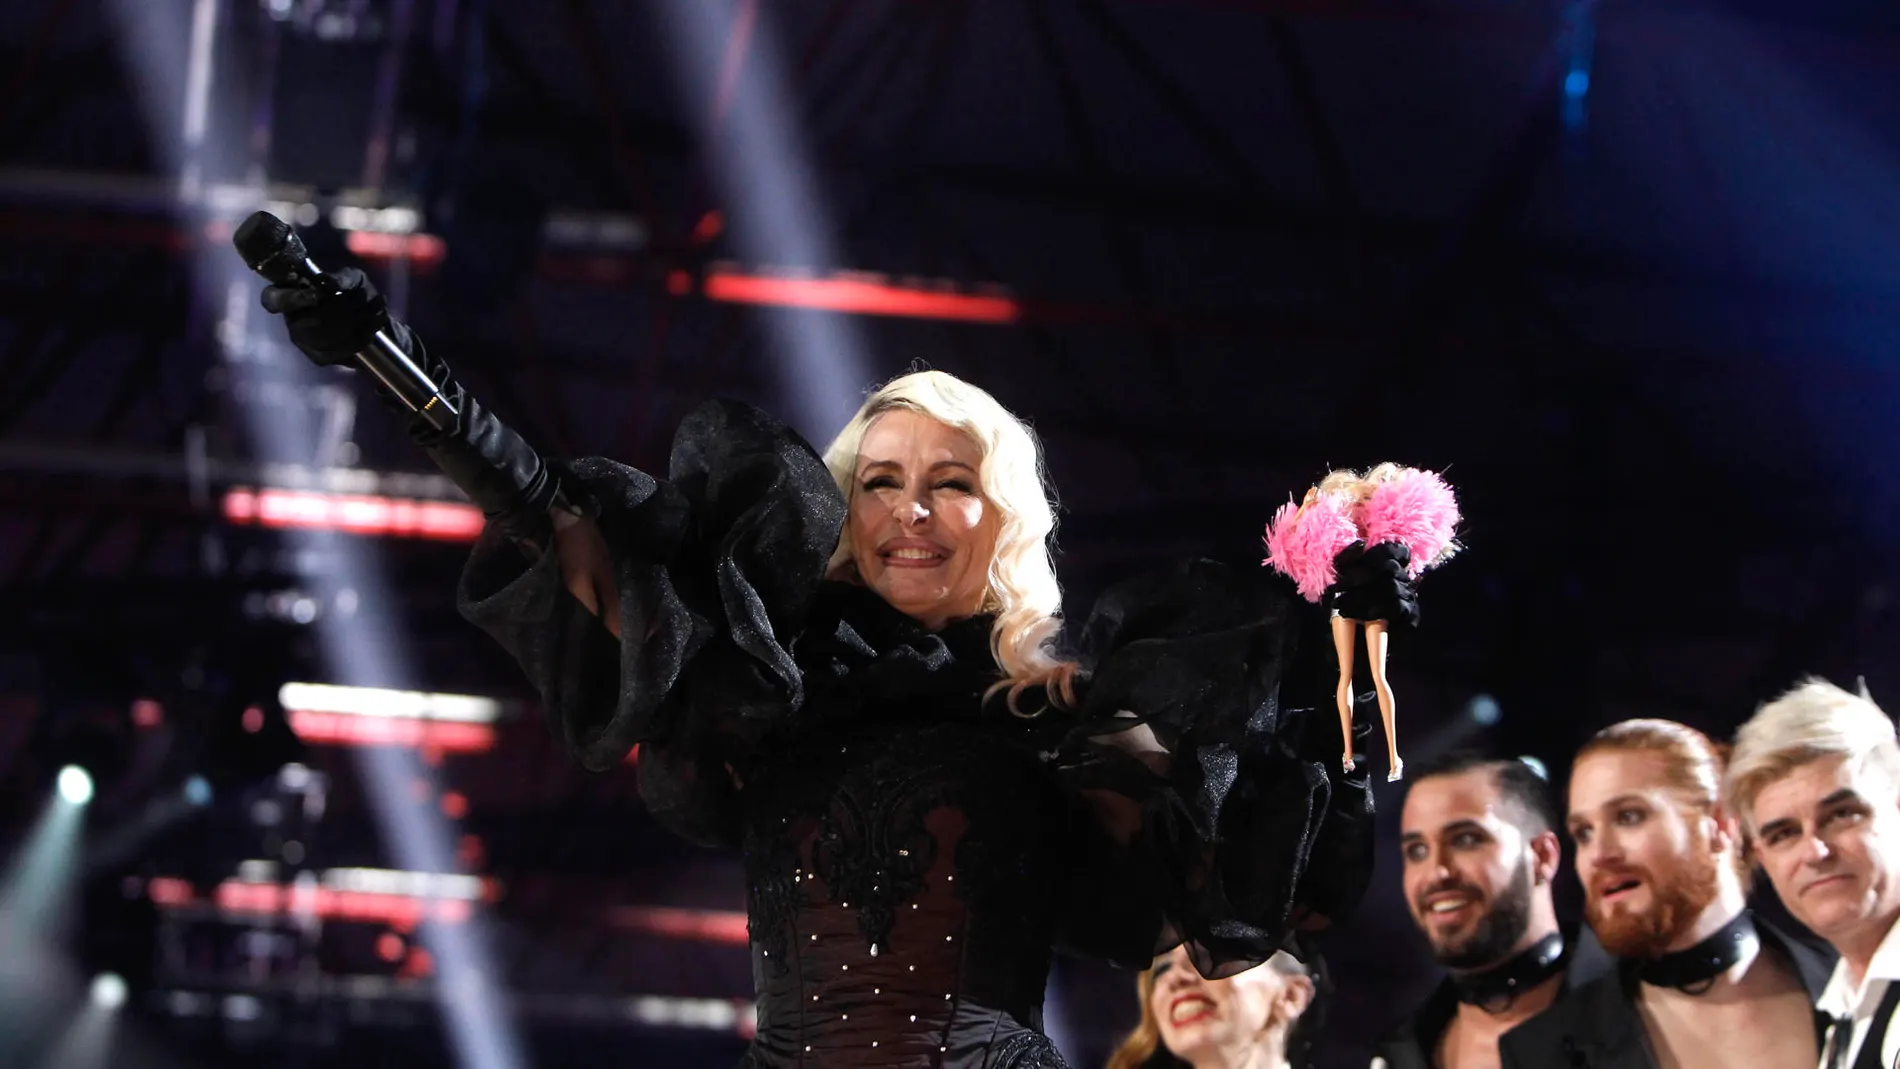 Qué opciones tiene Nebulossa en Eurovisión? Los expertos analizan 'Zorra